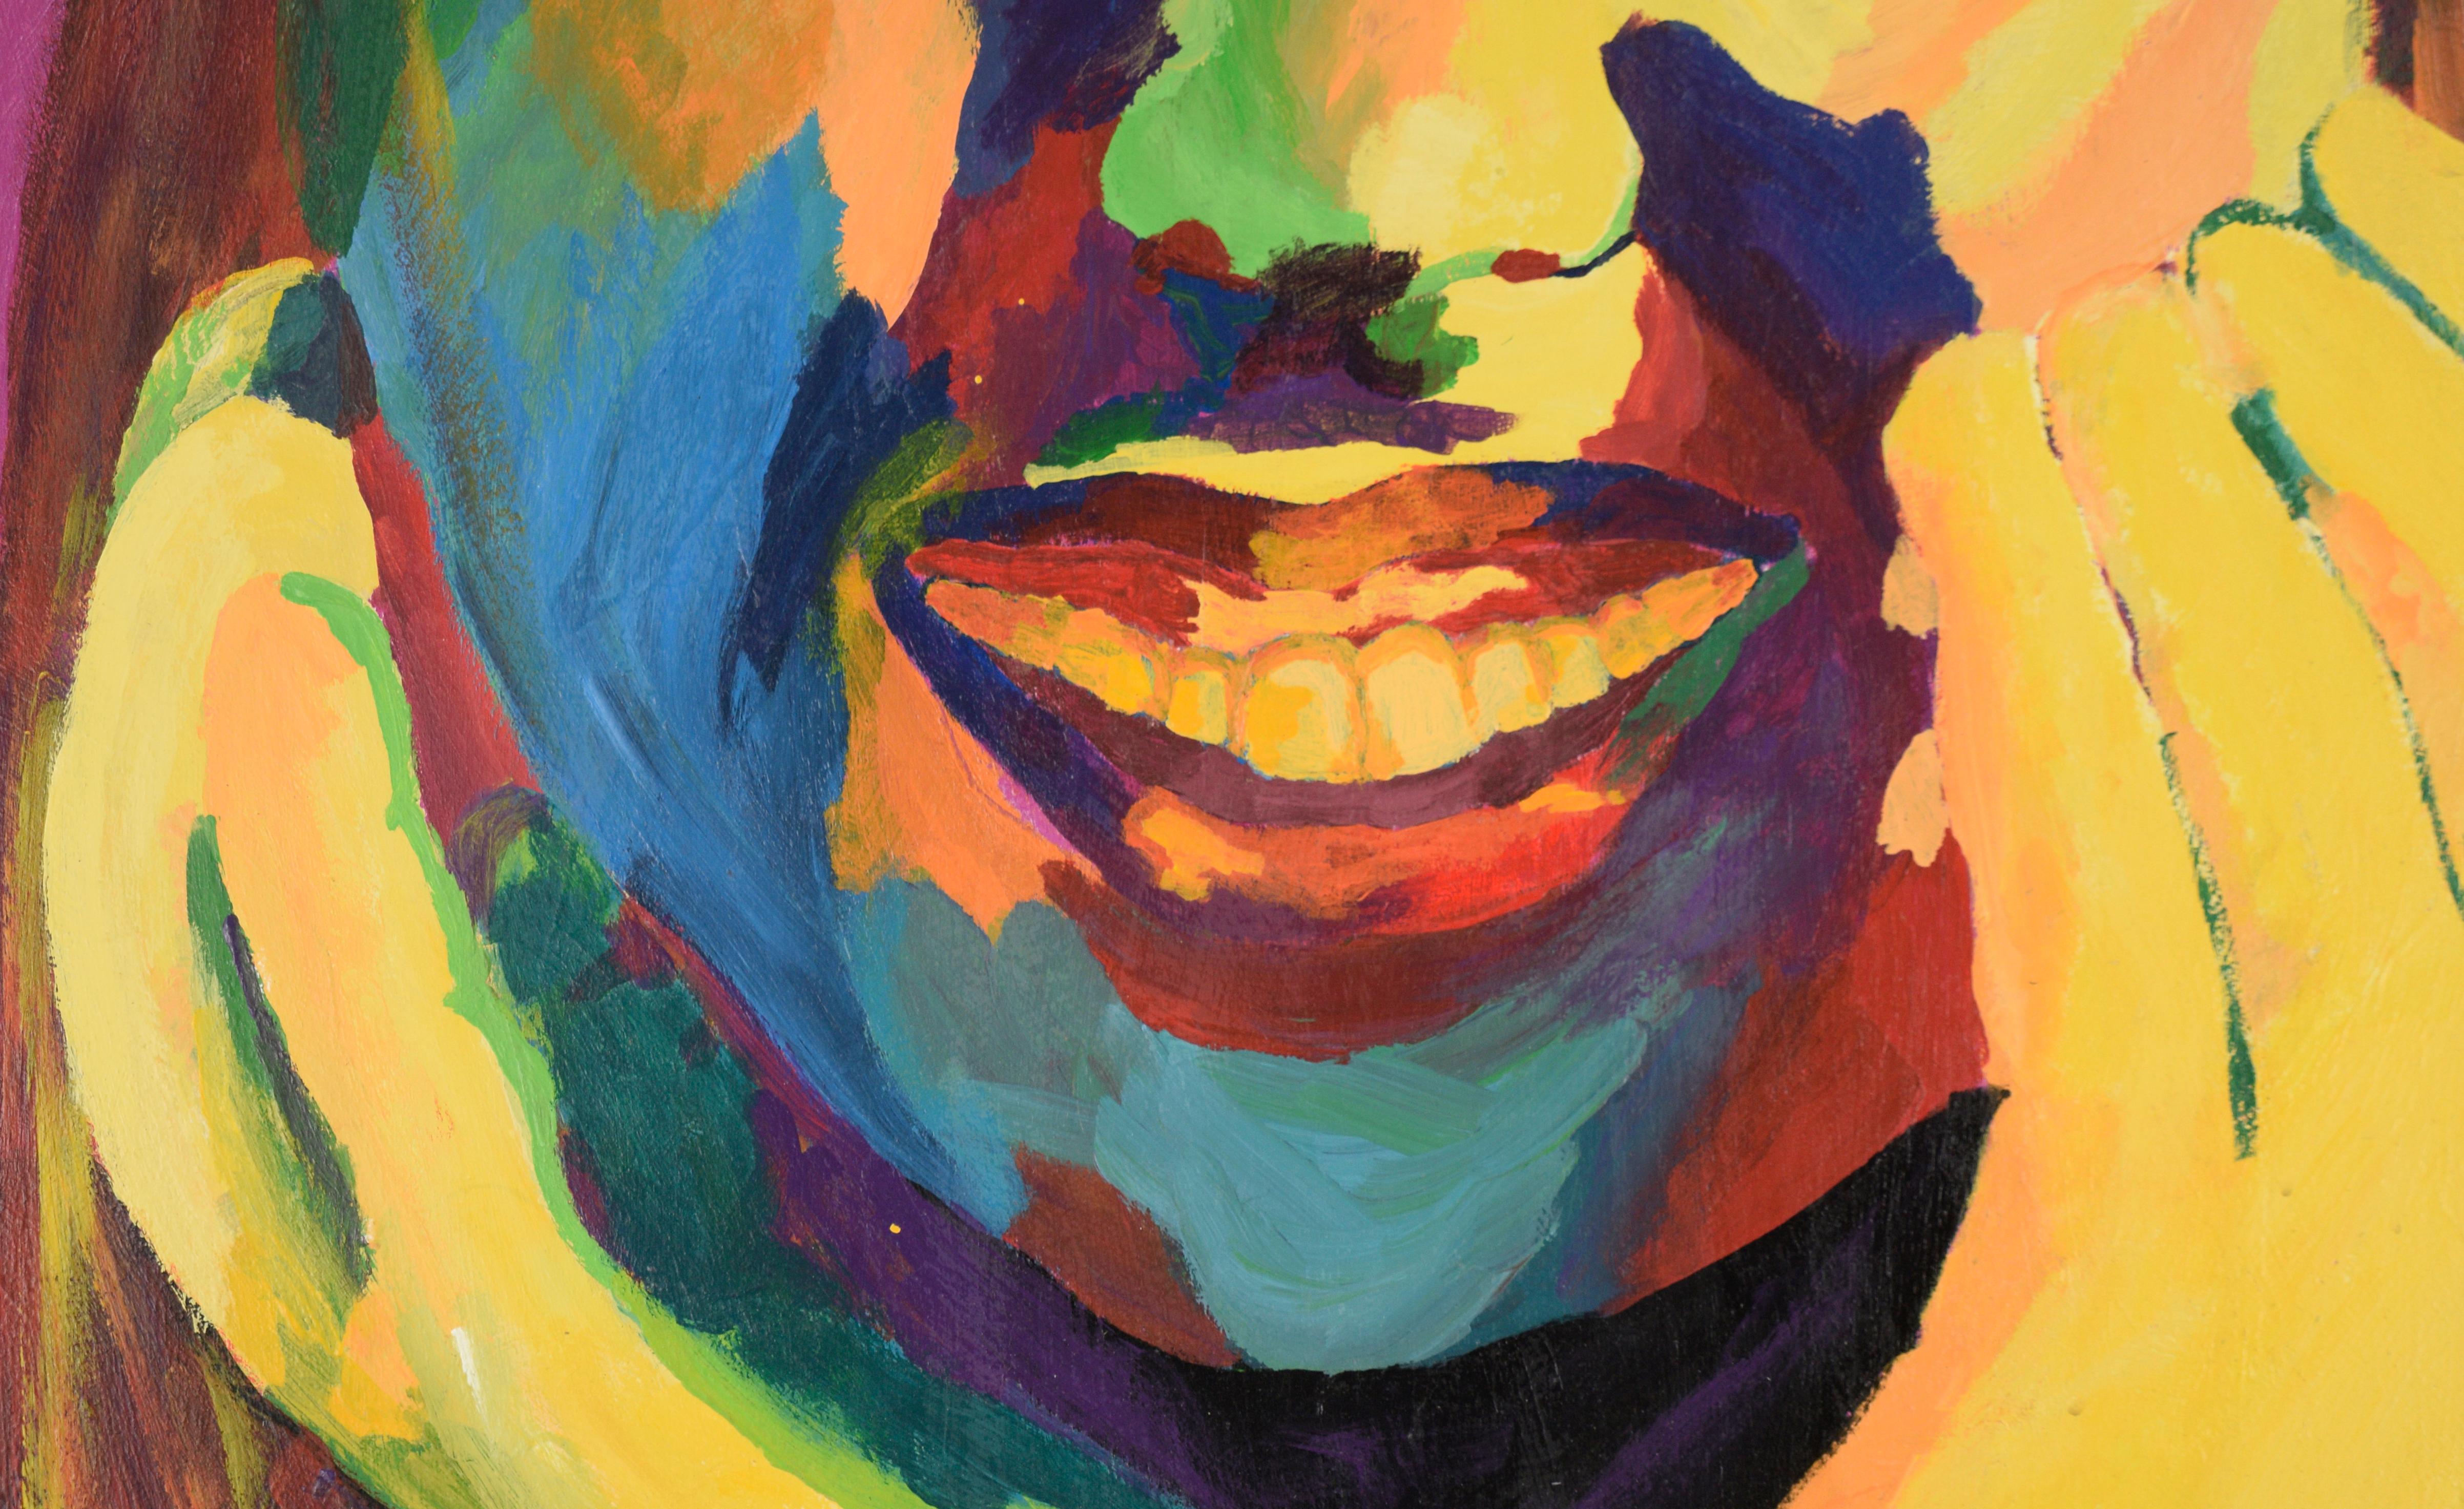 Lebhaftes Porträt einer lachenden Frau von Chelsea Frost. Dieses im fauvistischen Stil ausgeführte Werk ist hell und stark gesättigt. Die Frau ist sehr nah gerahmt, was ein intimes Gefühl für eine so große Komposition schafft.

Verso signiert